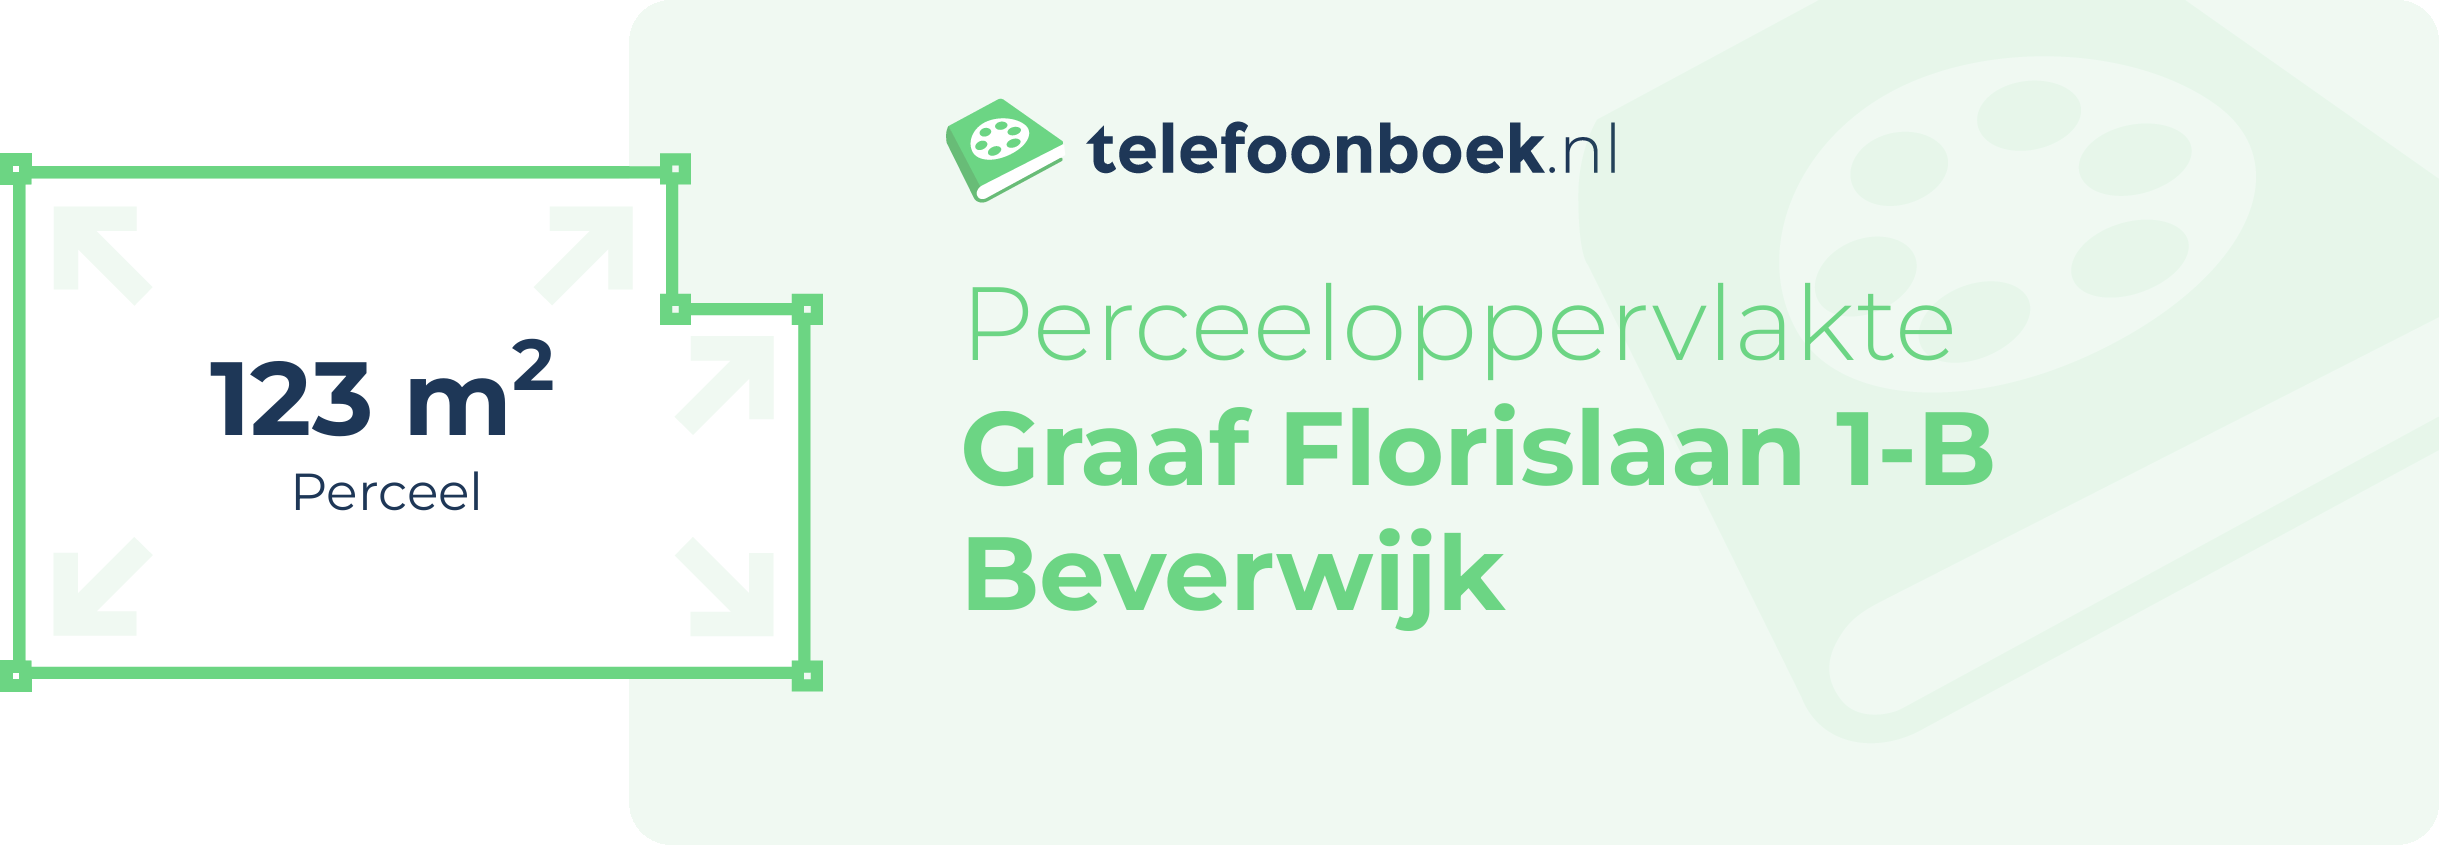 Perceeloppervlakte Graaf Florislaan 1-B Beverwijk